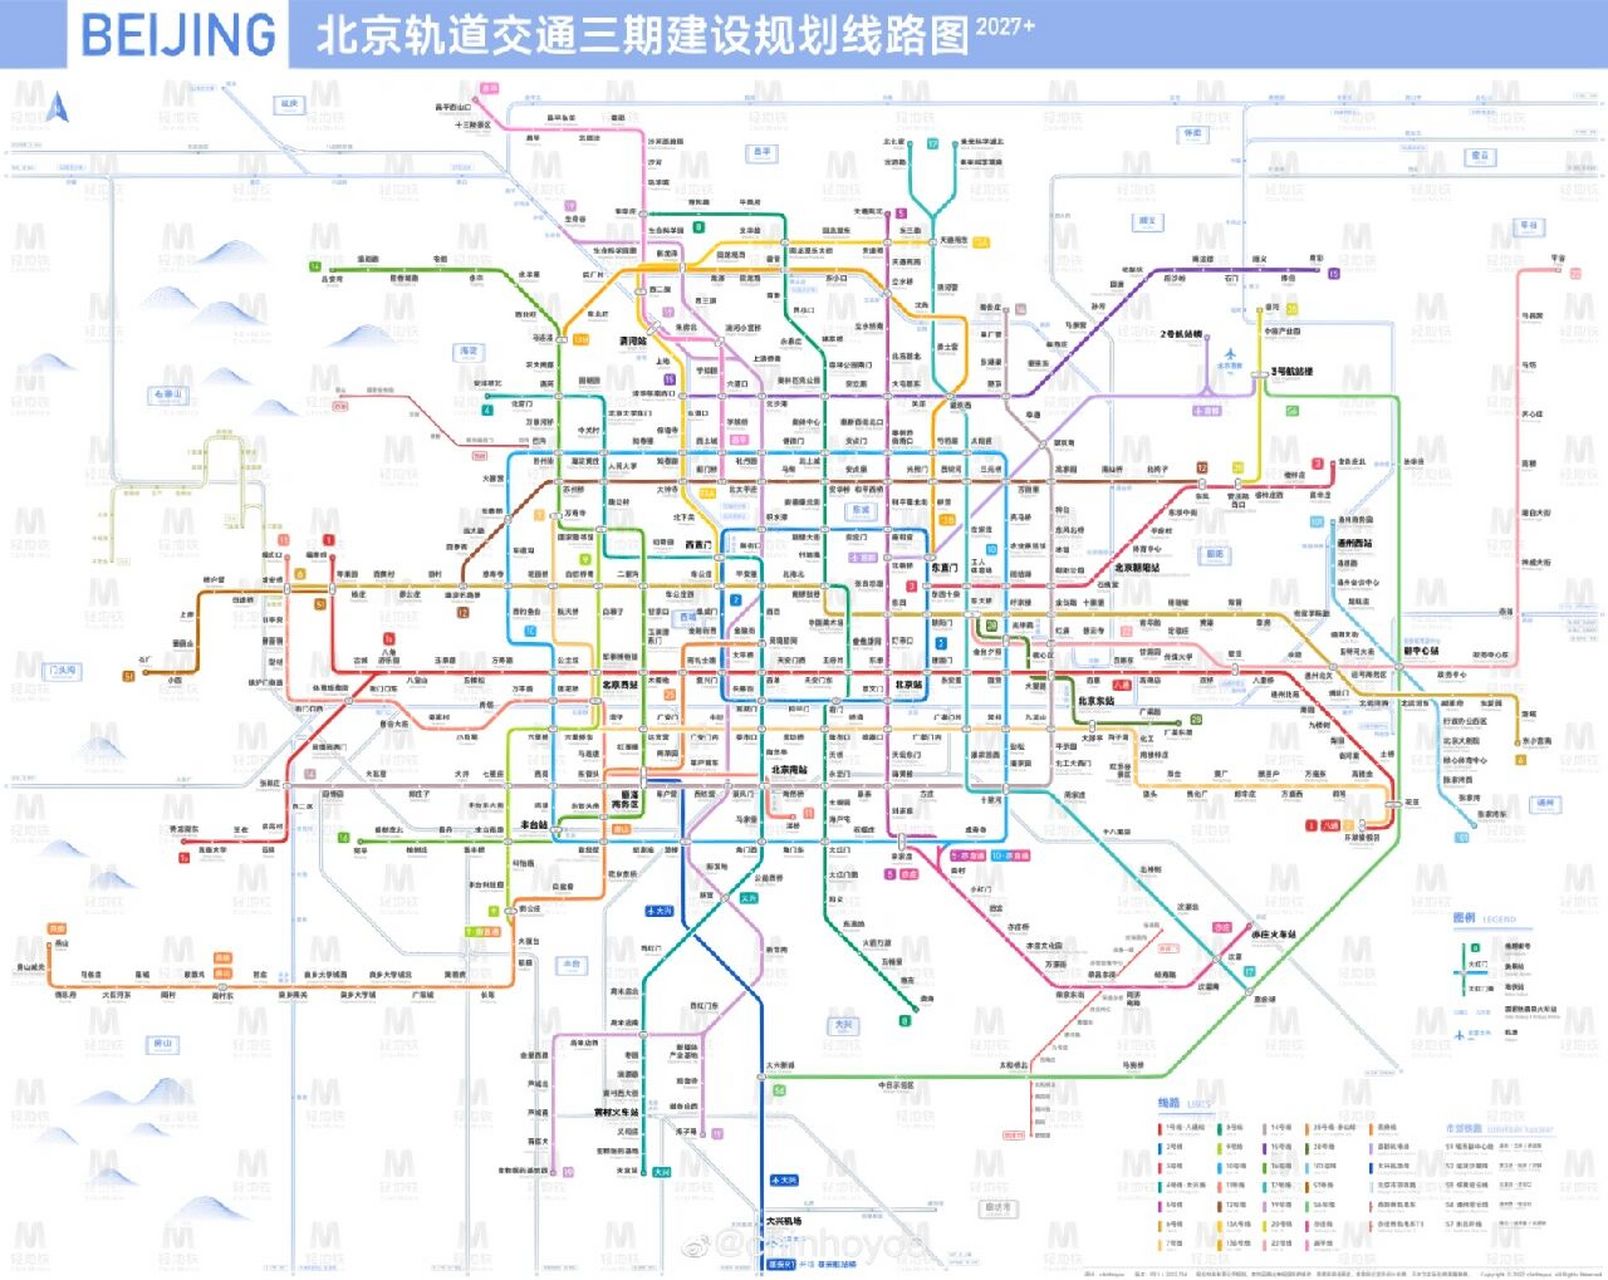 2027/2035北京地铁路线规划 友友们 买房可以参考了哈 私信发原图